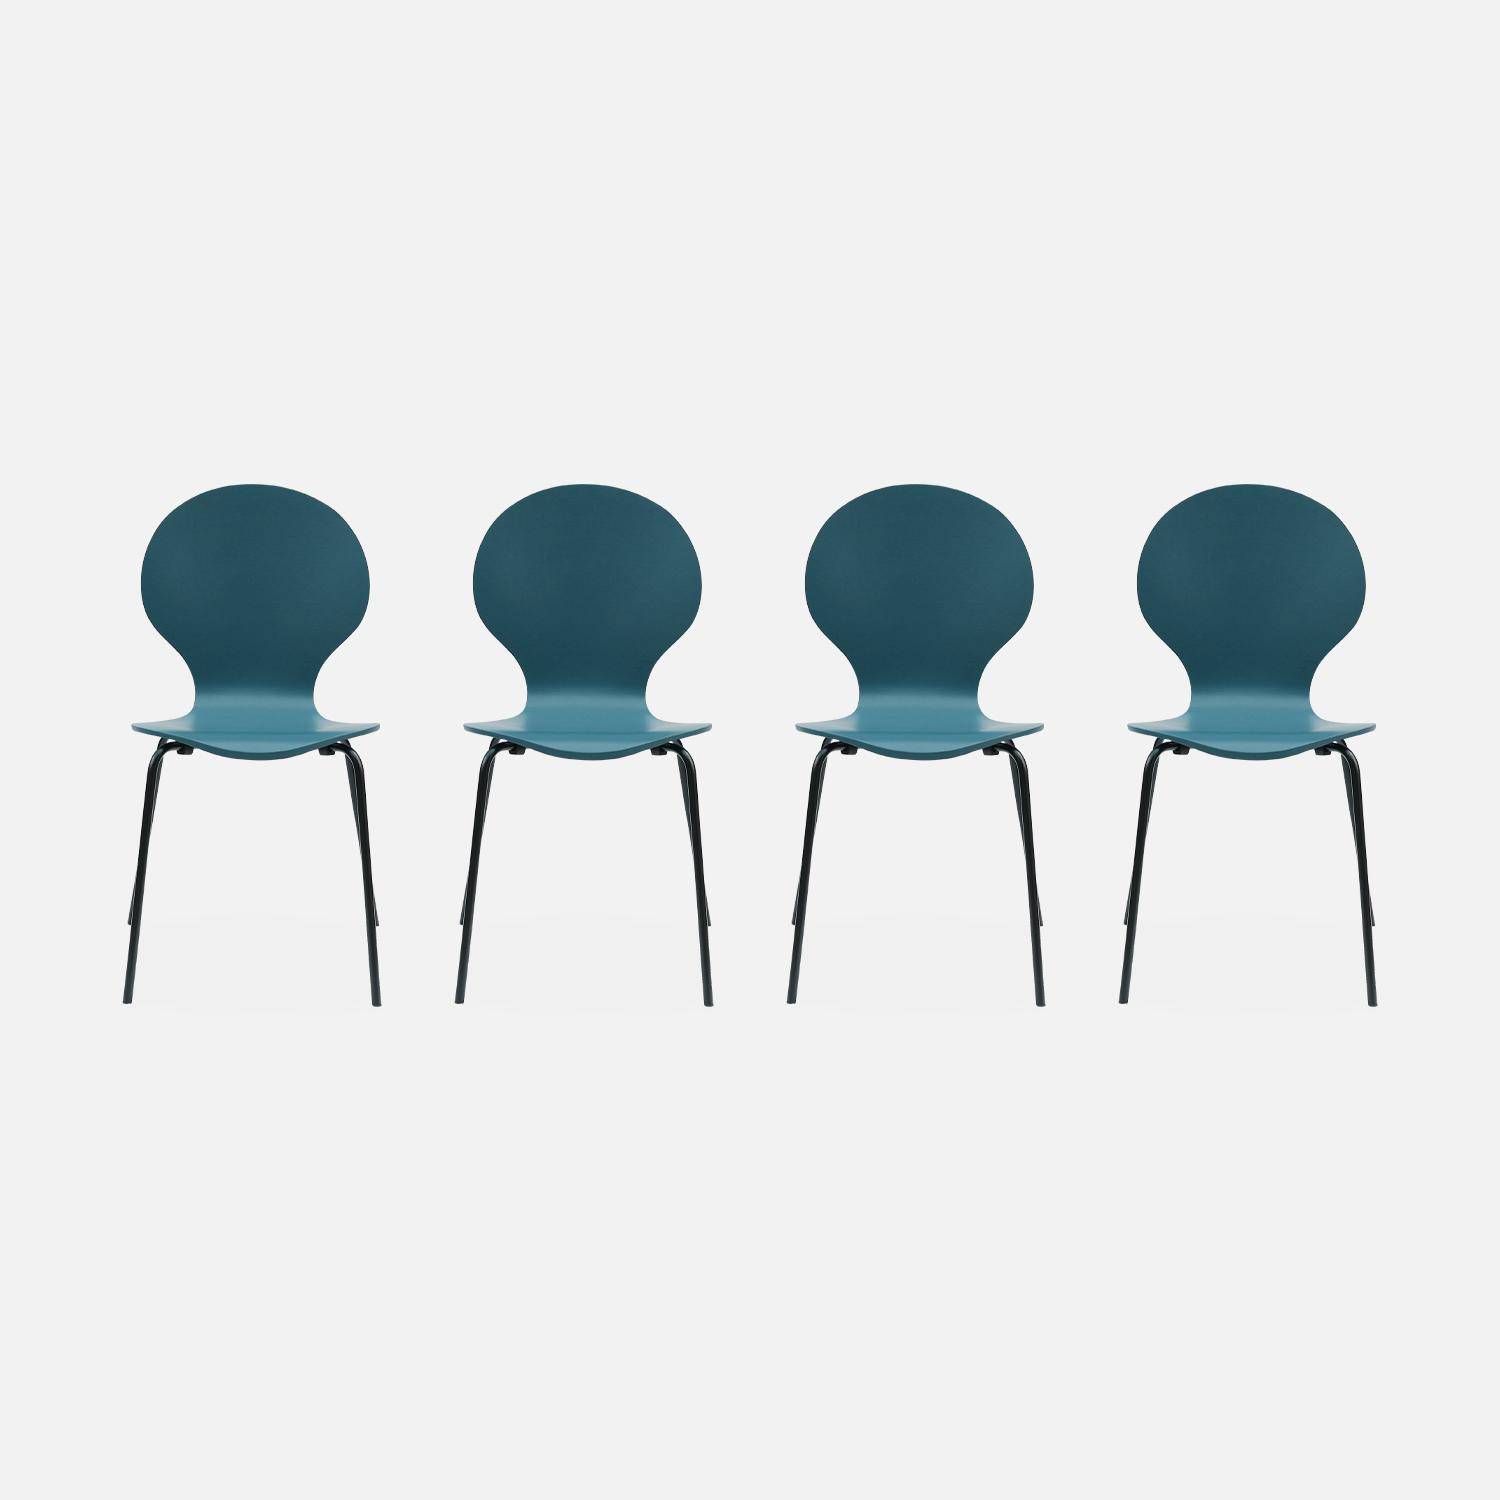 4er Set stapelbare Retro-Stühle in blau, Hevea-Holz und Sperrholz, Beine aus Stahl, Naomi, B 43 x T 48 x H 87cm Photo3